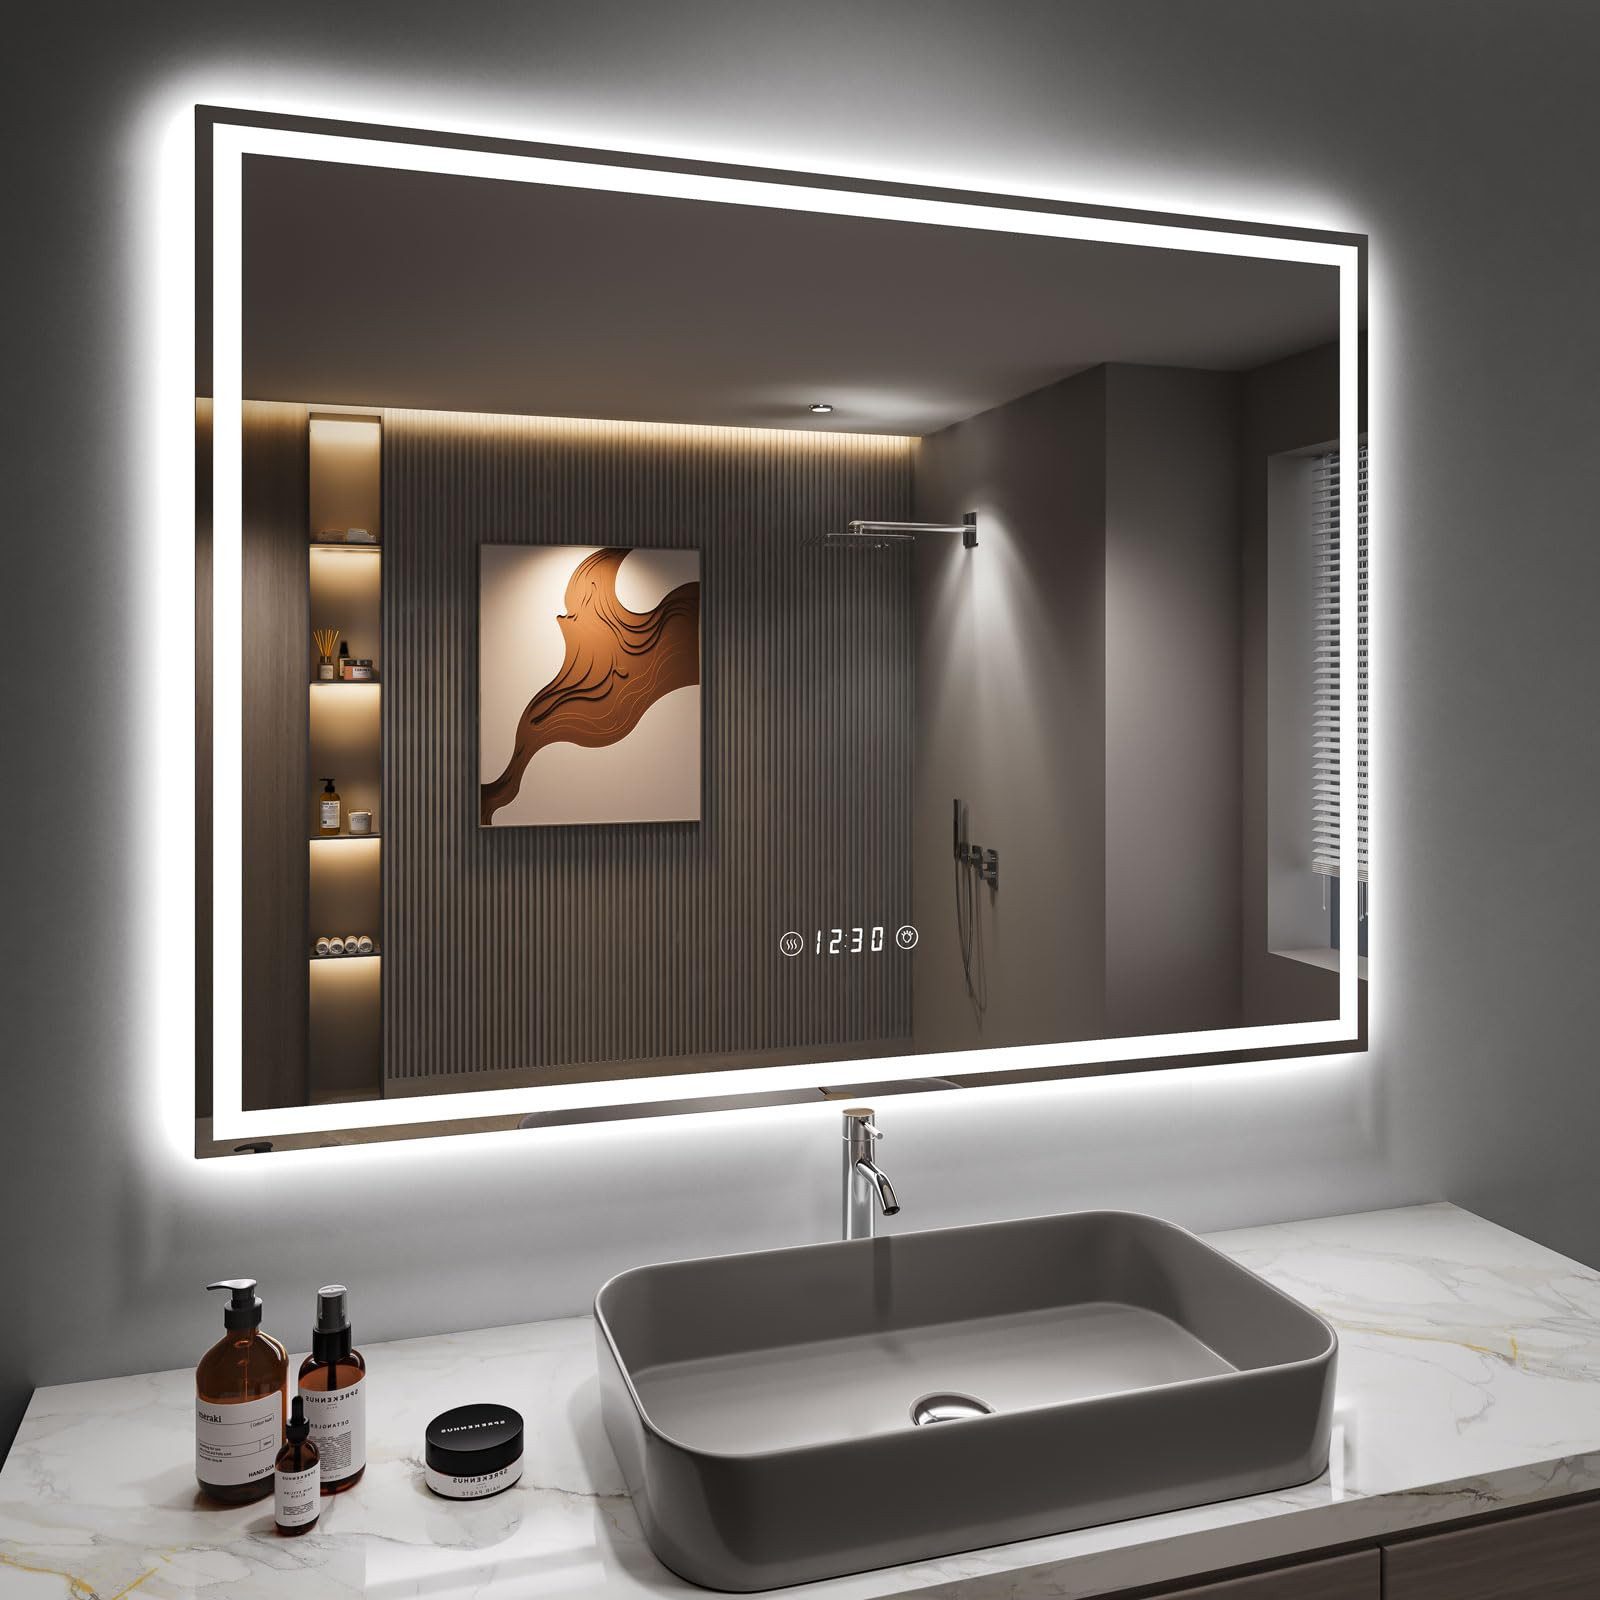 Dripex Badspiegel Badezimmerspiegel Led, 3-fache Bildvergrößerung/ uhr/ steckdose/ 3 Lichtfarbe/ Beschlagfrei